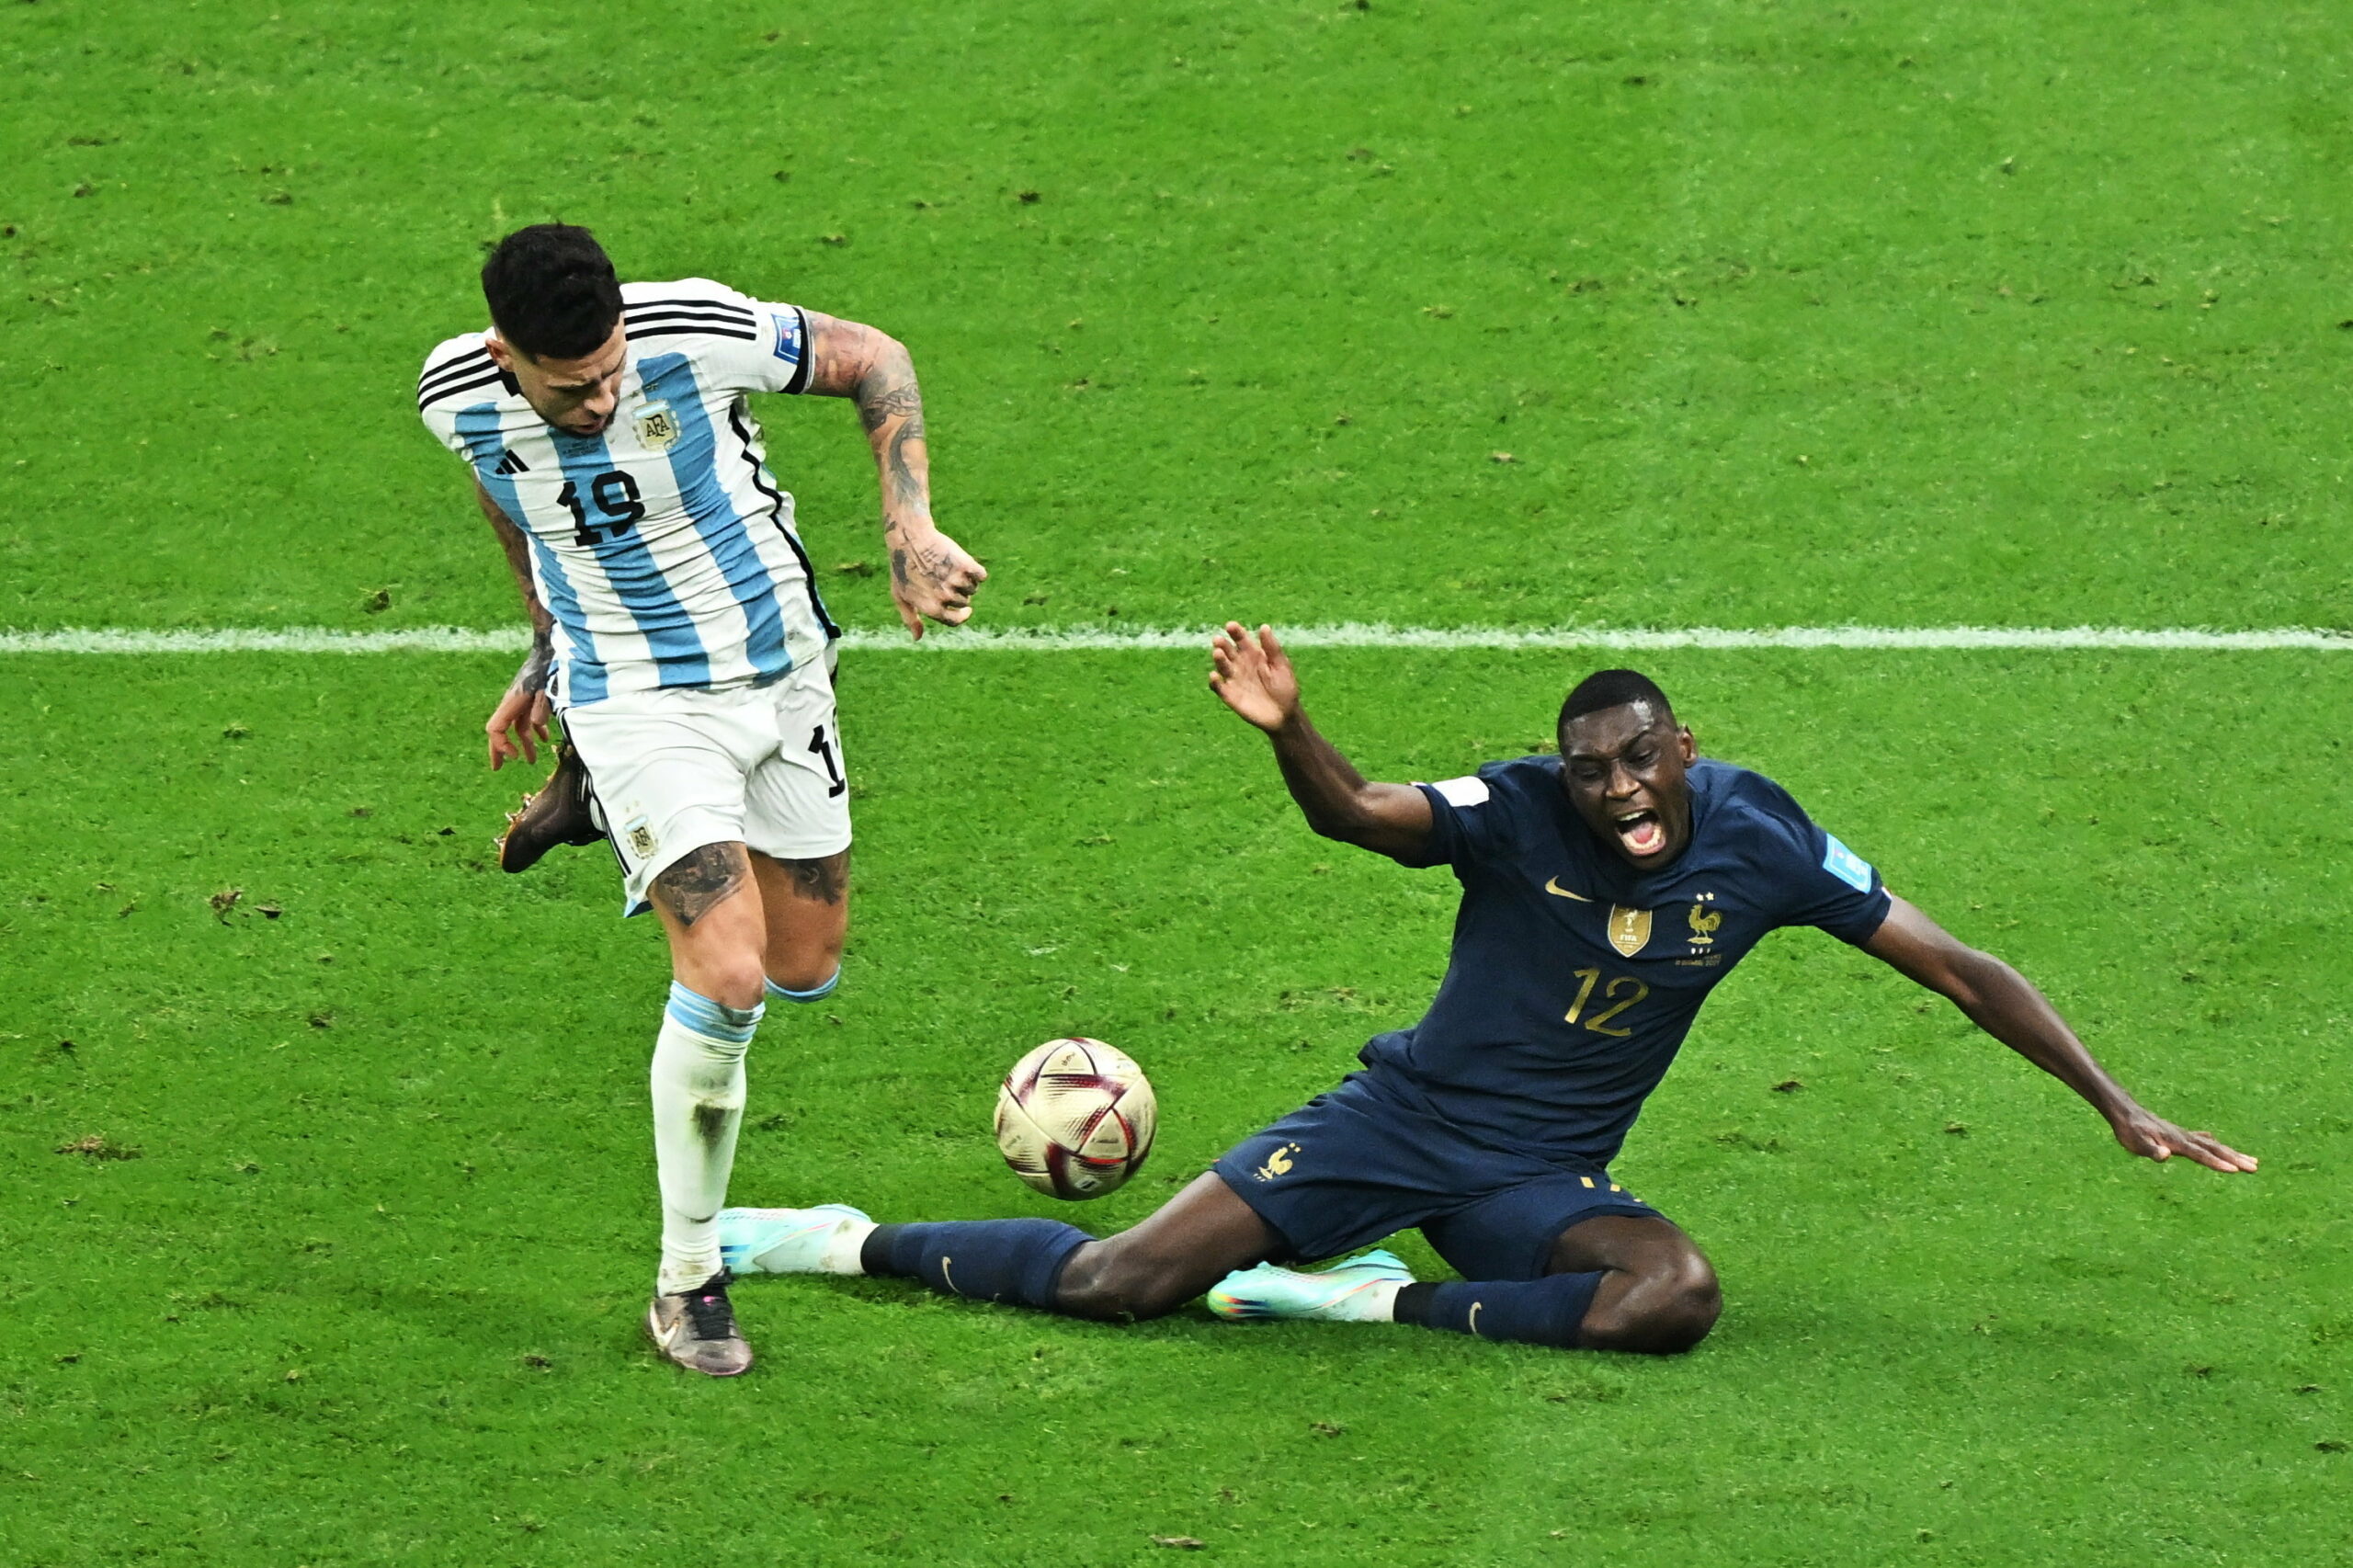 Világbajnok Argentína! 11-esekkel nyert Franciaország ellen a katari foci vb döntőjében egy emlékezetes meccsen